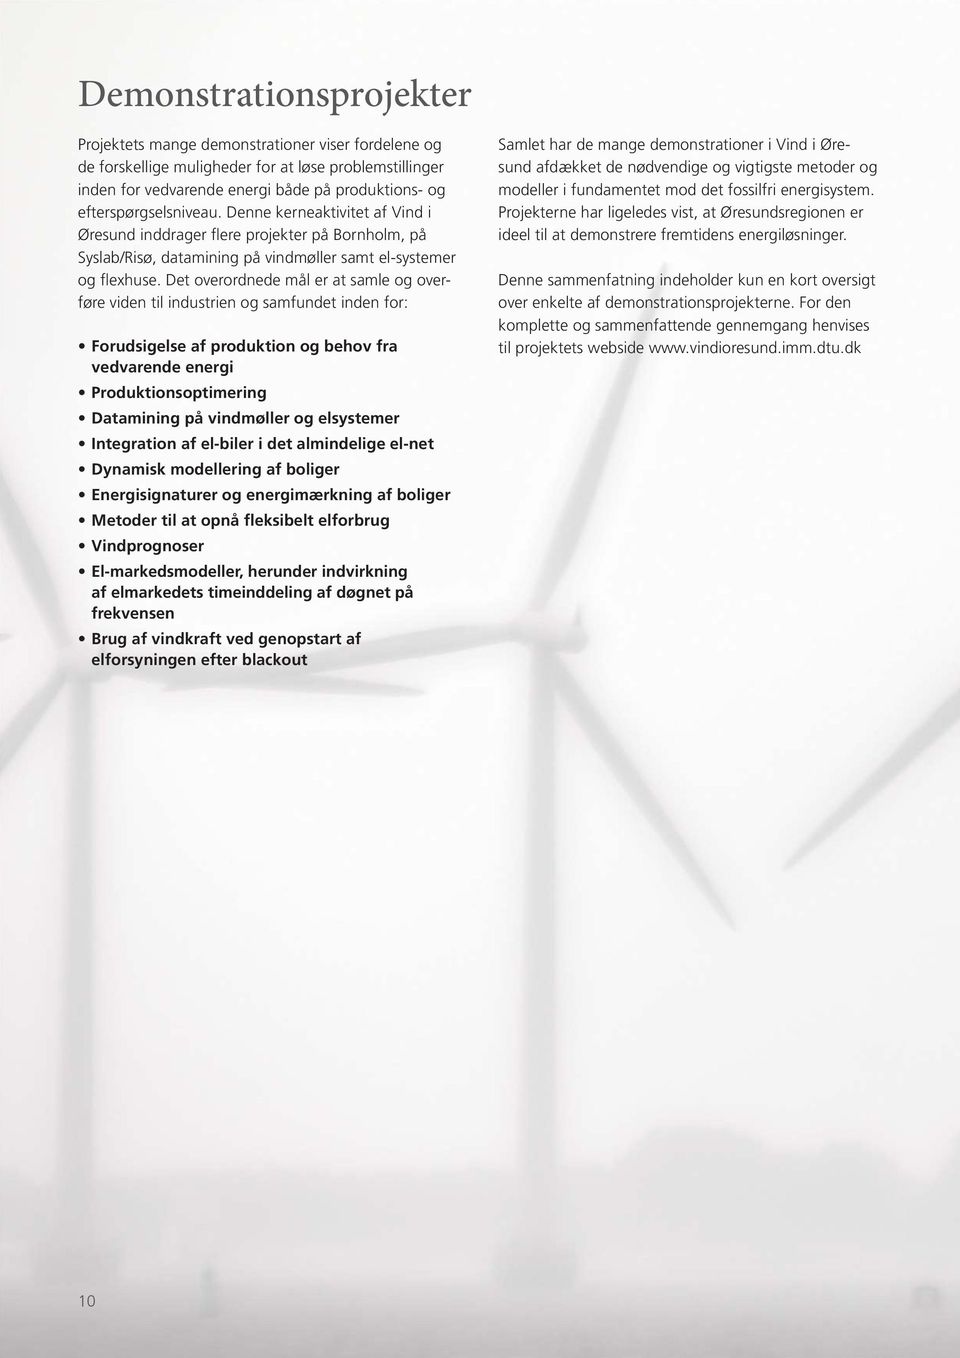 Det overordnede mål er at samle og overføre viden til industrien og samfundet inden for: Forudsigelse af produktion og behov fra vedvarende energi Produktionsoptimering Datamining på vindmøller og